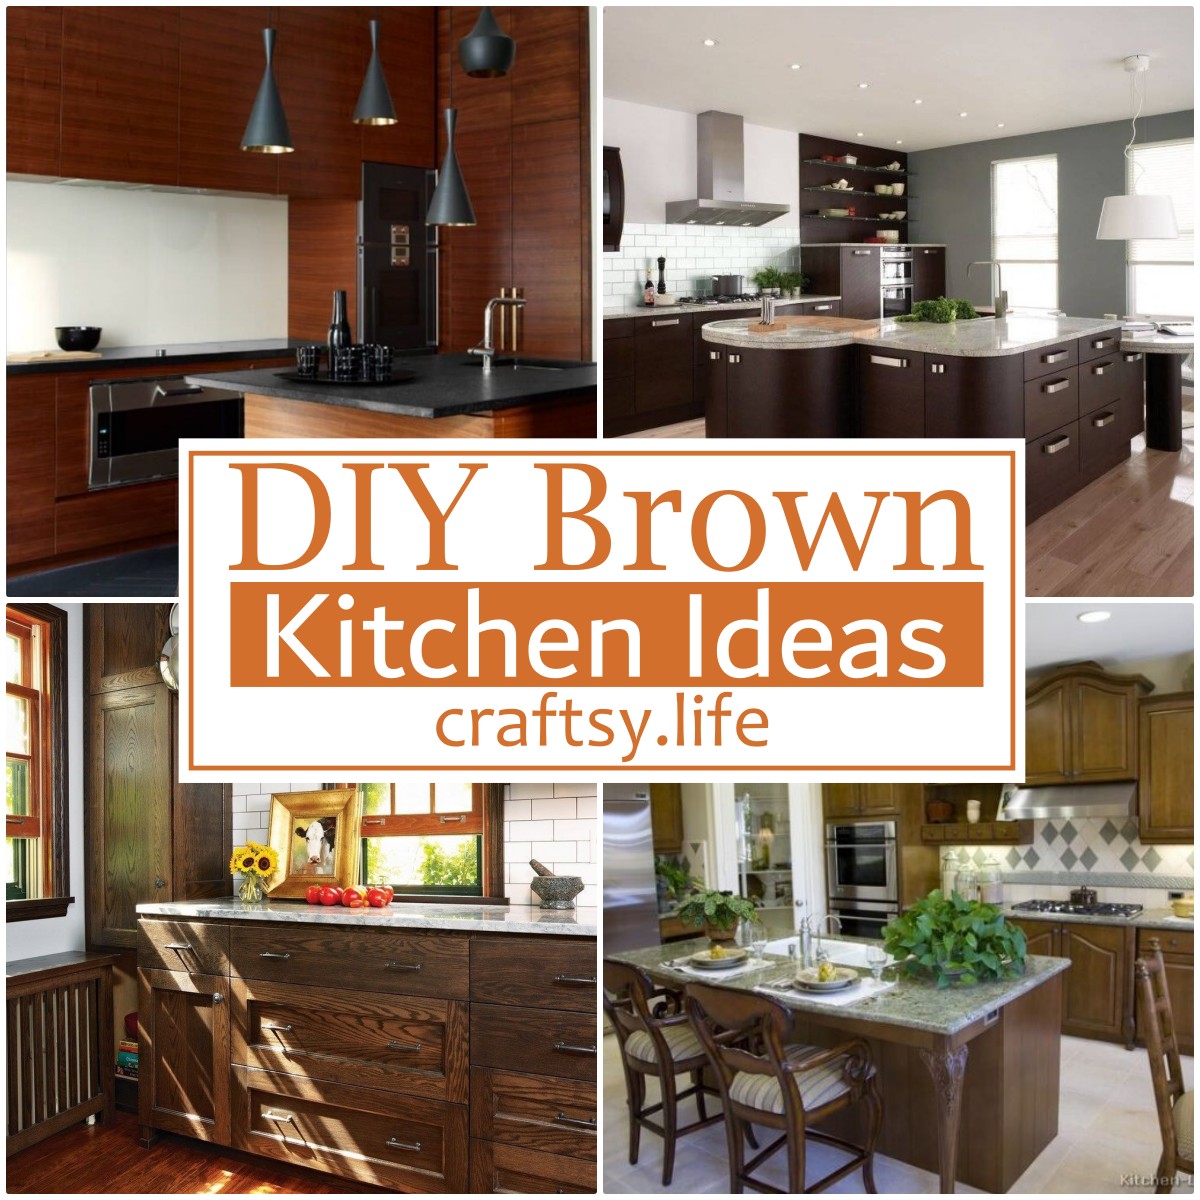 DIY Brown Kitchen Ideas